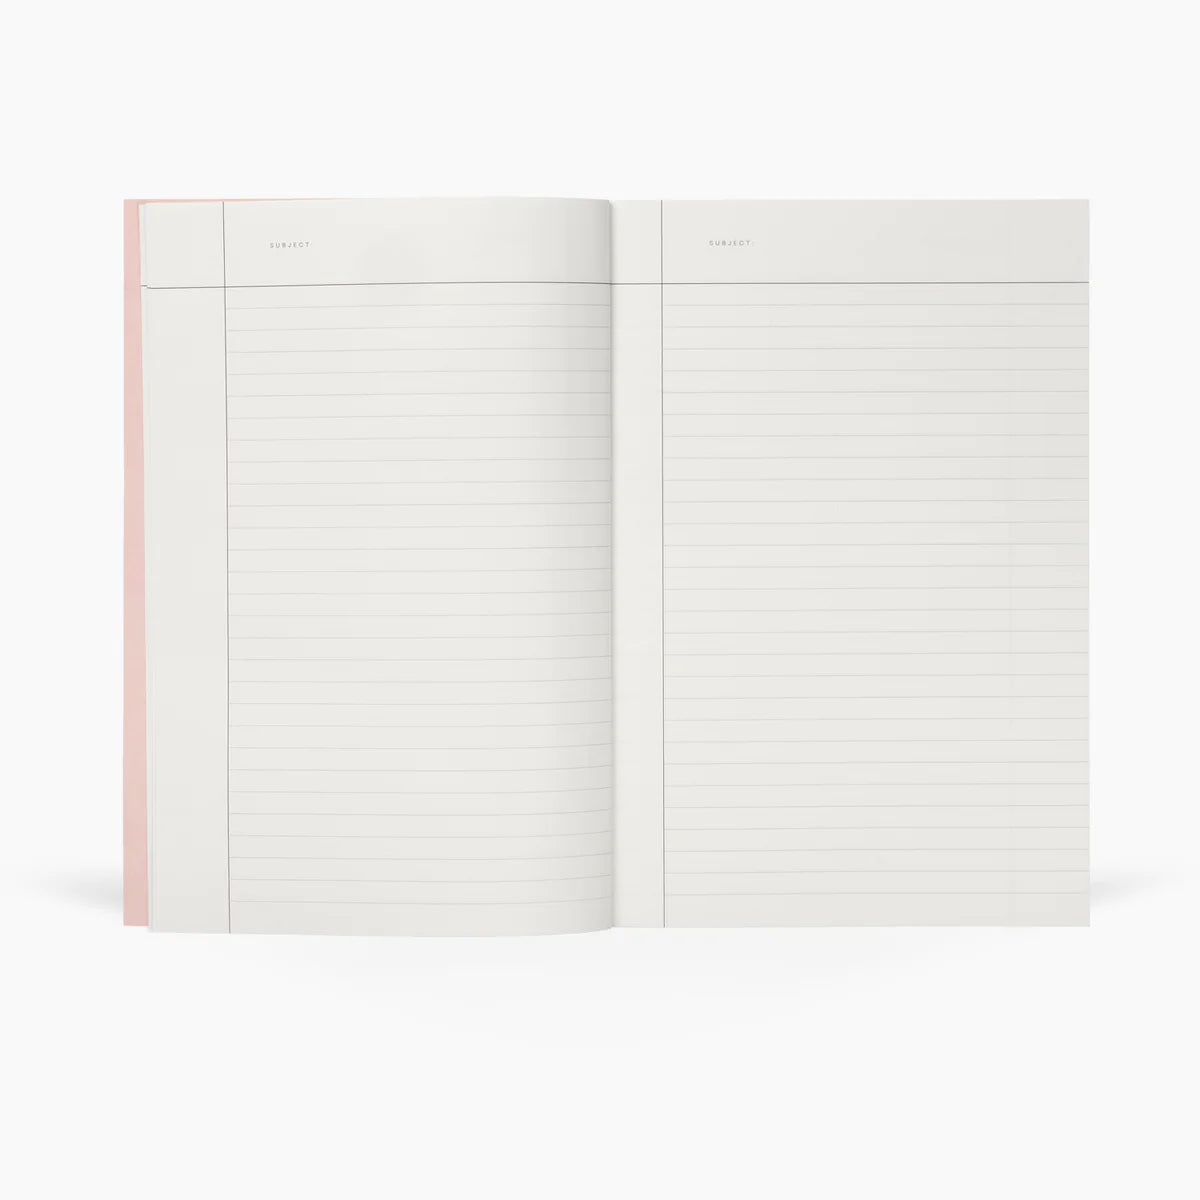 NOTEM Vita Notebook, Medium - Green Grid